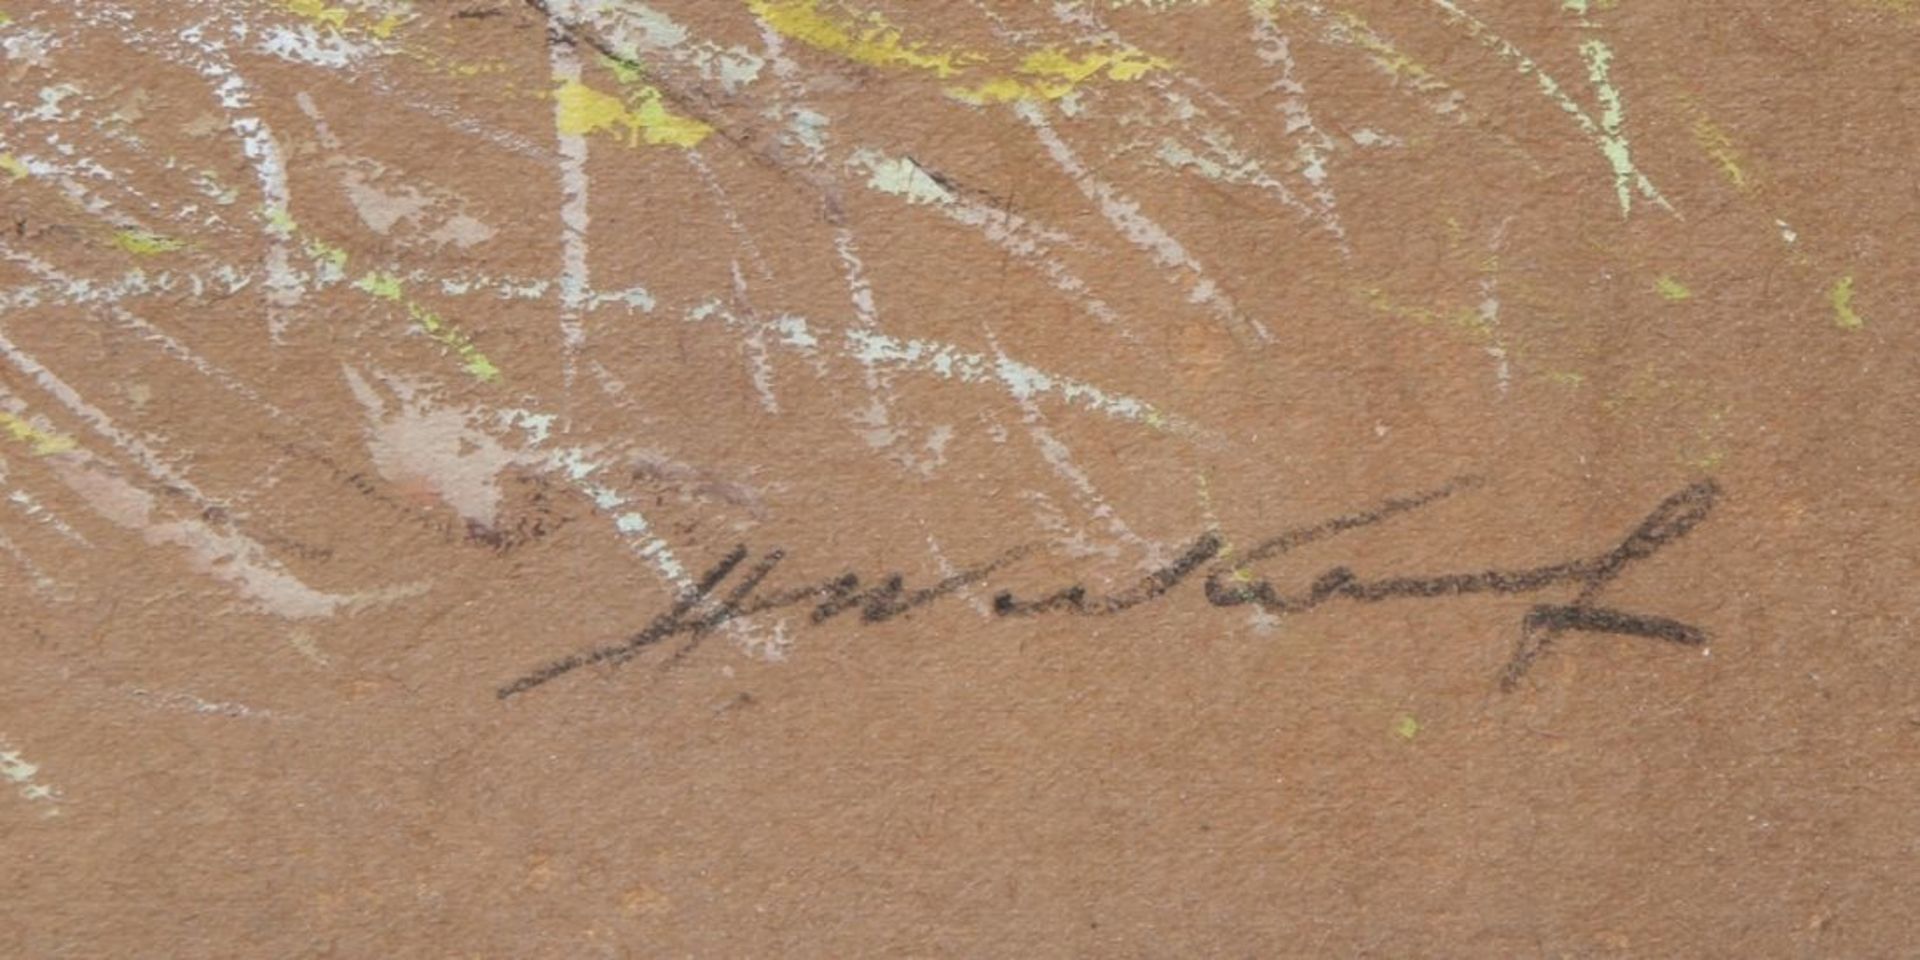 Unleserlich signierender Maler, Mitte 20. Jh. "Weite Landschaft", Mischtechnik, 35 x 48 cm< - Bild 2 aus 2